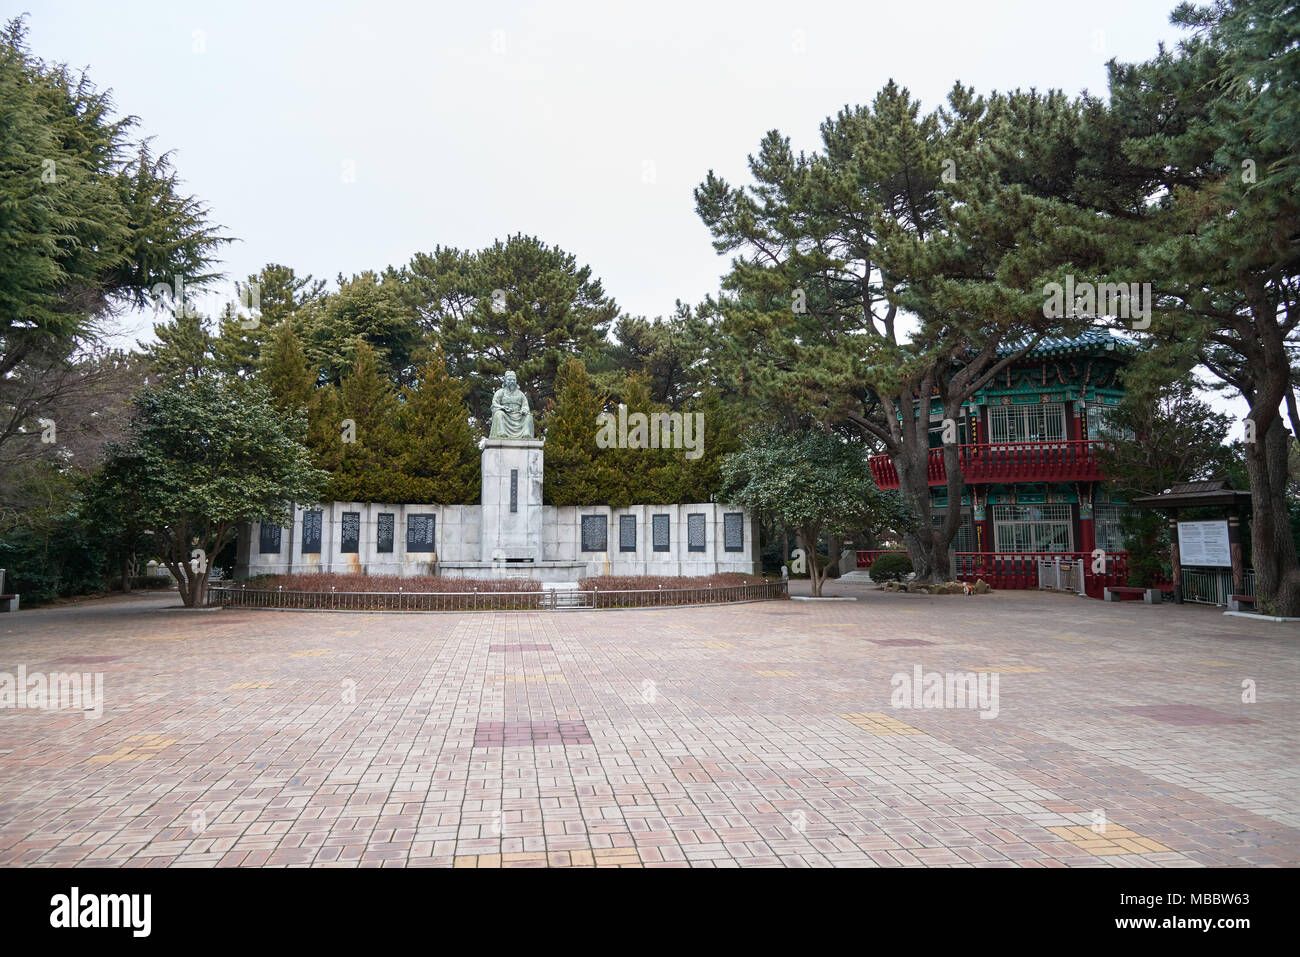 Busan, Corée - 22 janvier 2016 : Choi chiwon statue et bâtiment historique au parc de Dongbaek à Busan, Corée. Chiwon Choi était un célèbre confucéenne coréenne o Banque D'Images